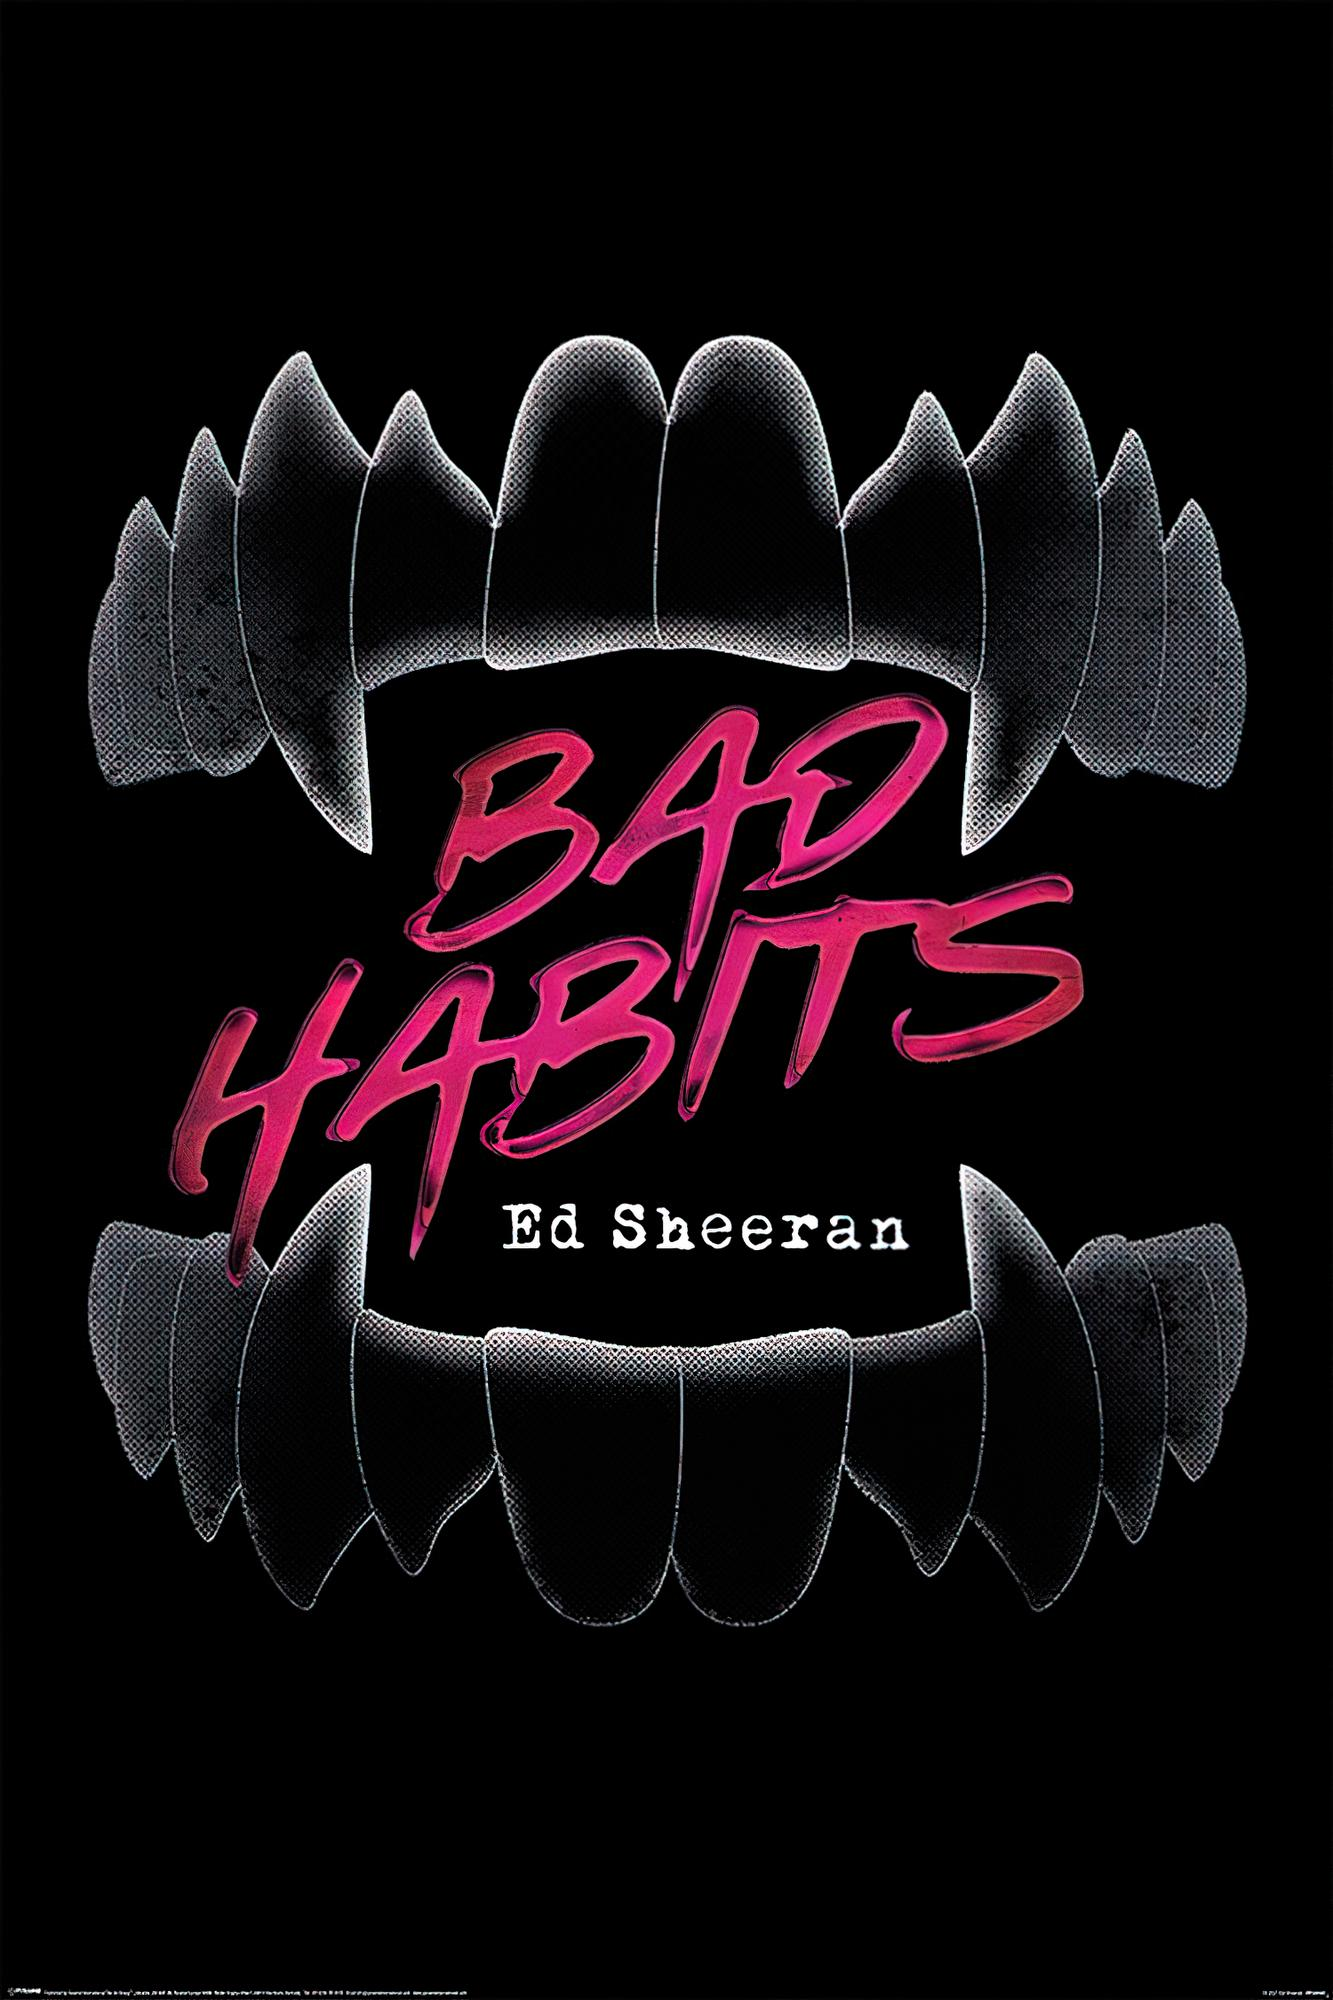 INTERNATIONAL Sheeran Poster Habits PYRAMID Poster Bad Ed